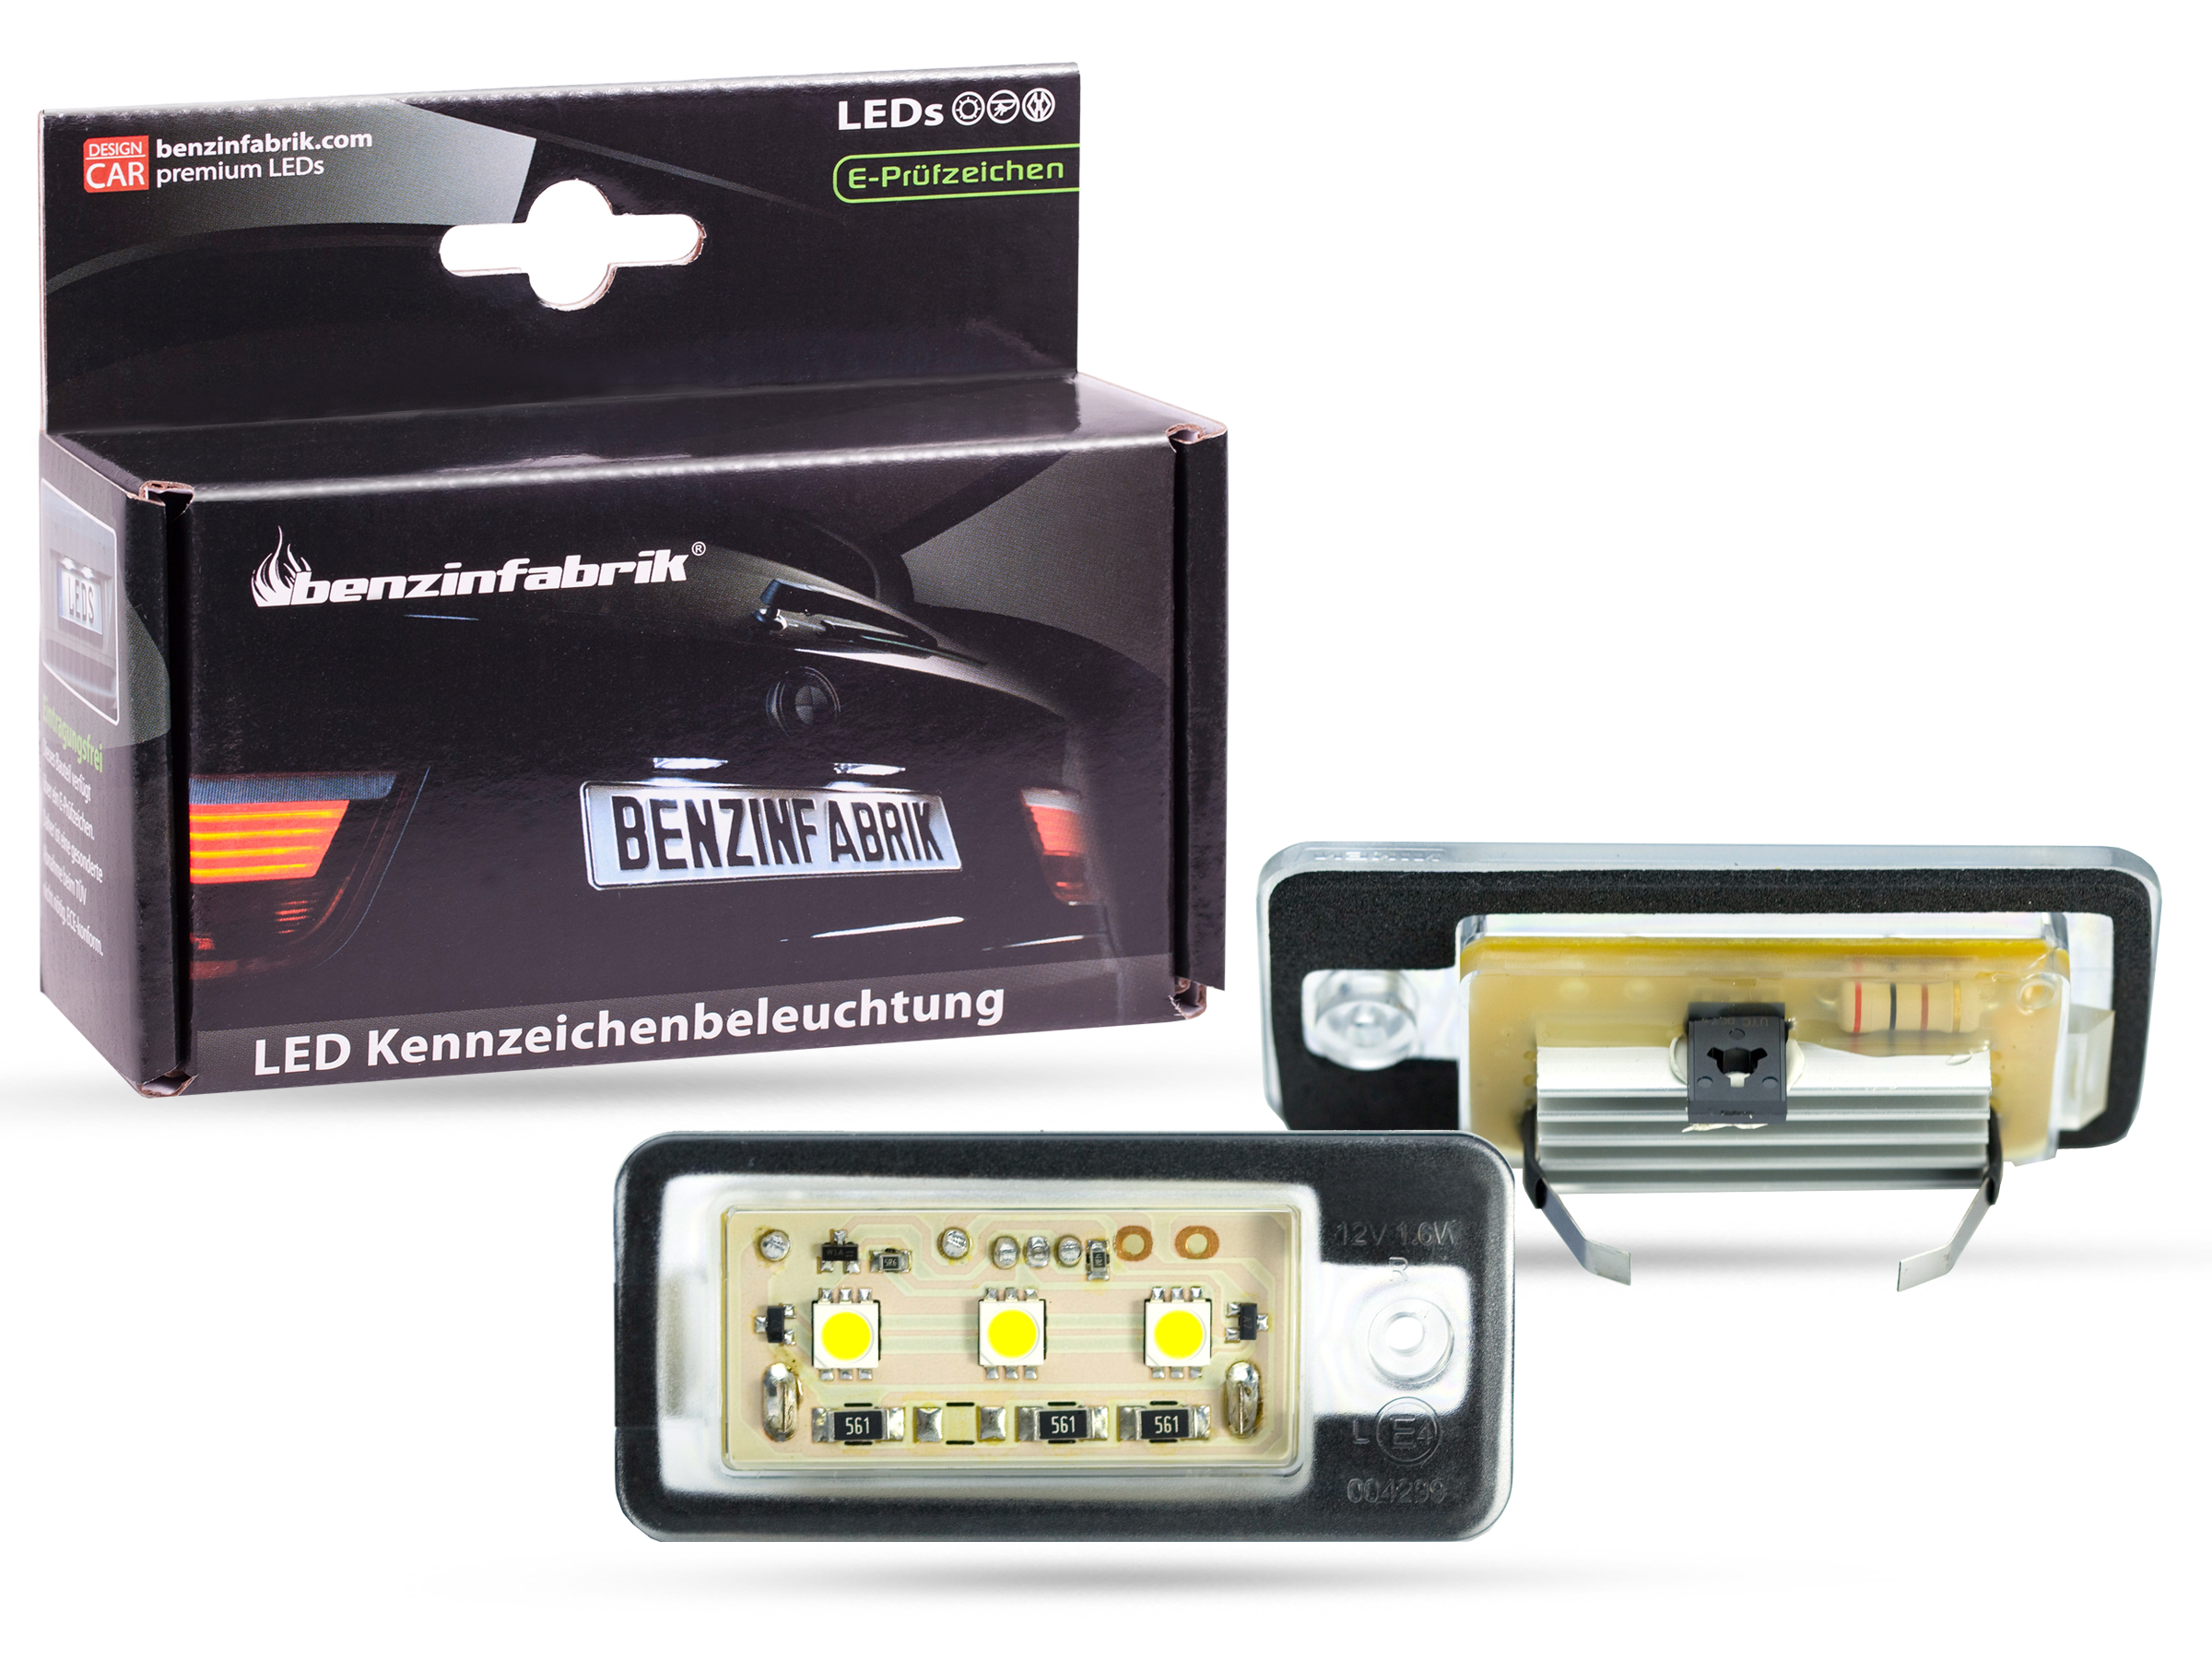 LED Kennzeichenbeleuchtung Module Audi A3, A3 Sportsback, S3, 8P Bj. 03-13,  mit E-Prüfzeichen, LED Kennzeichenbeleuchtung für Audi, LED  Kennzeichenbeleuchtung